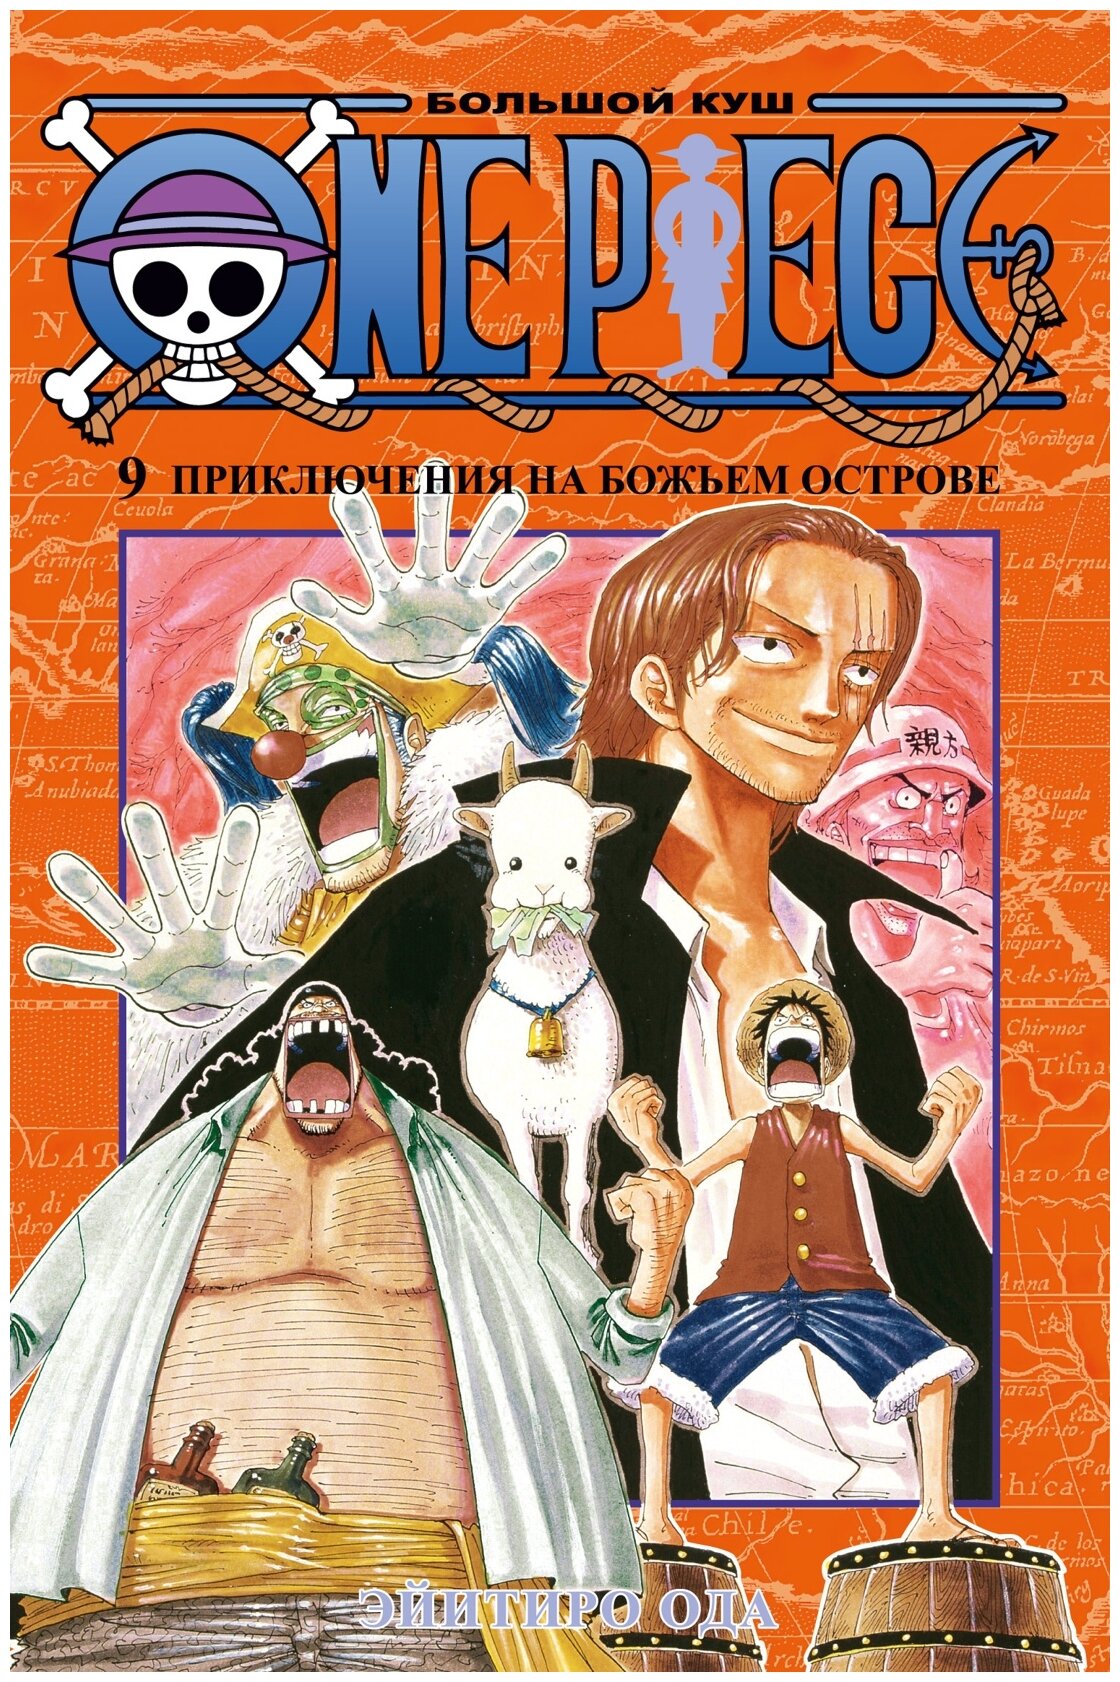 Ода Э. "Манга One Piece. Большой куш. Кн.9. Приключения на божьем острове. Ода Э."